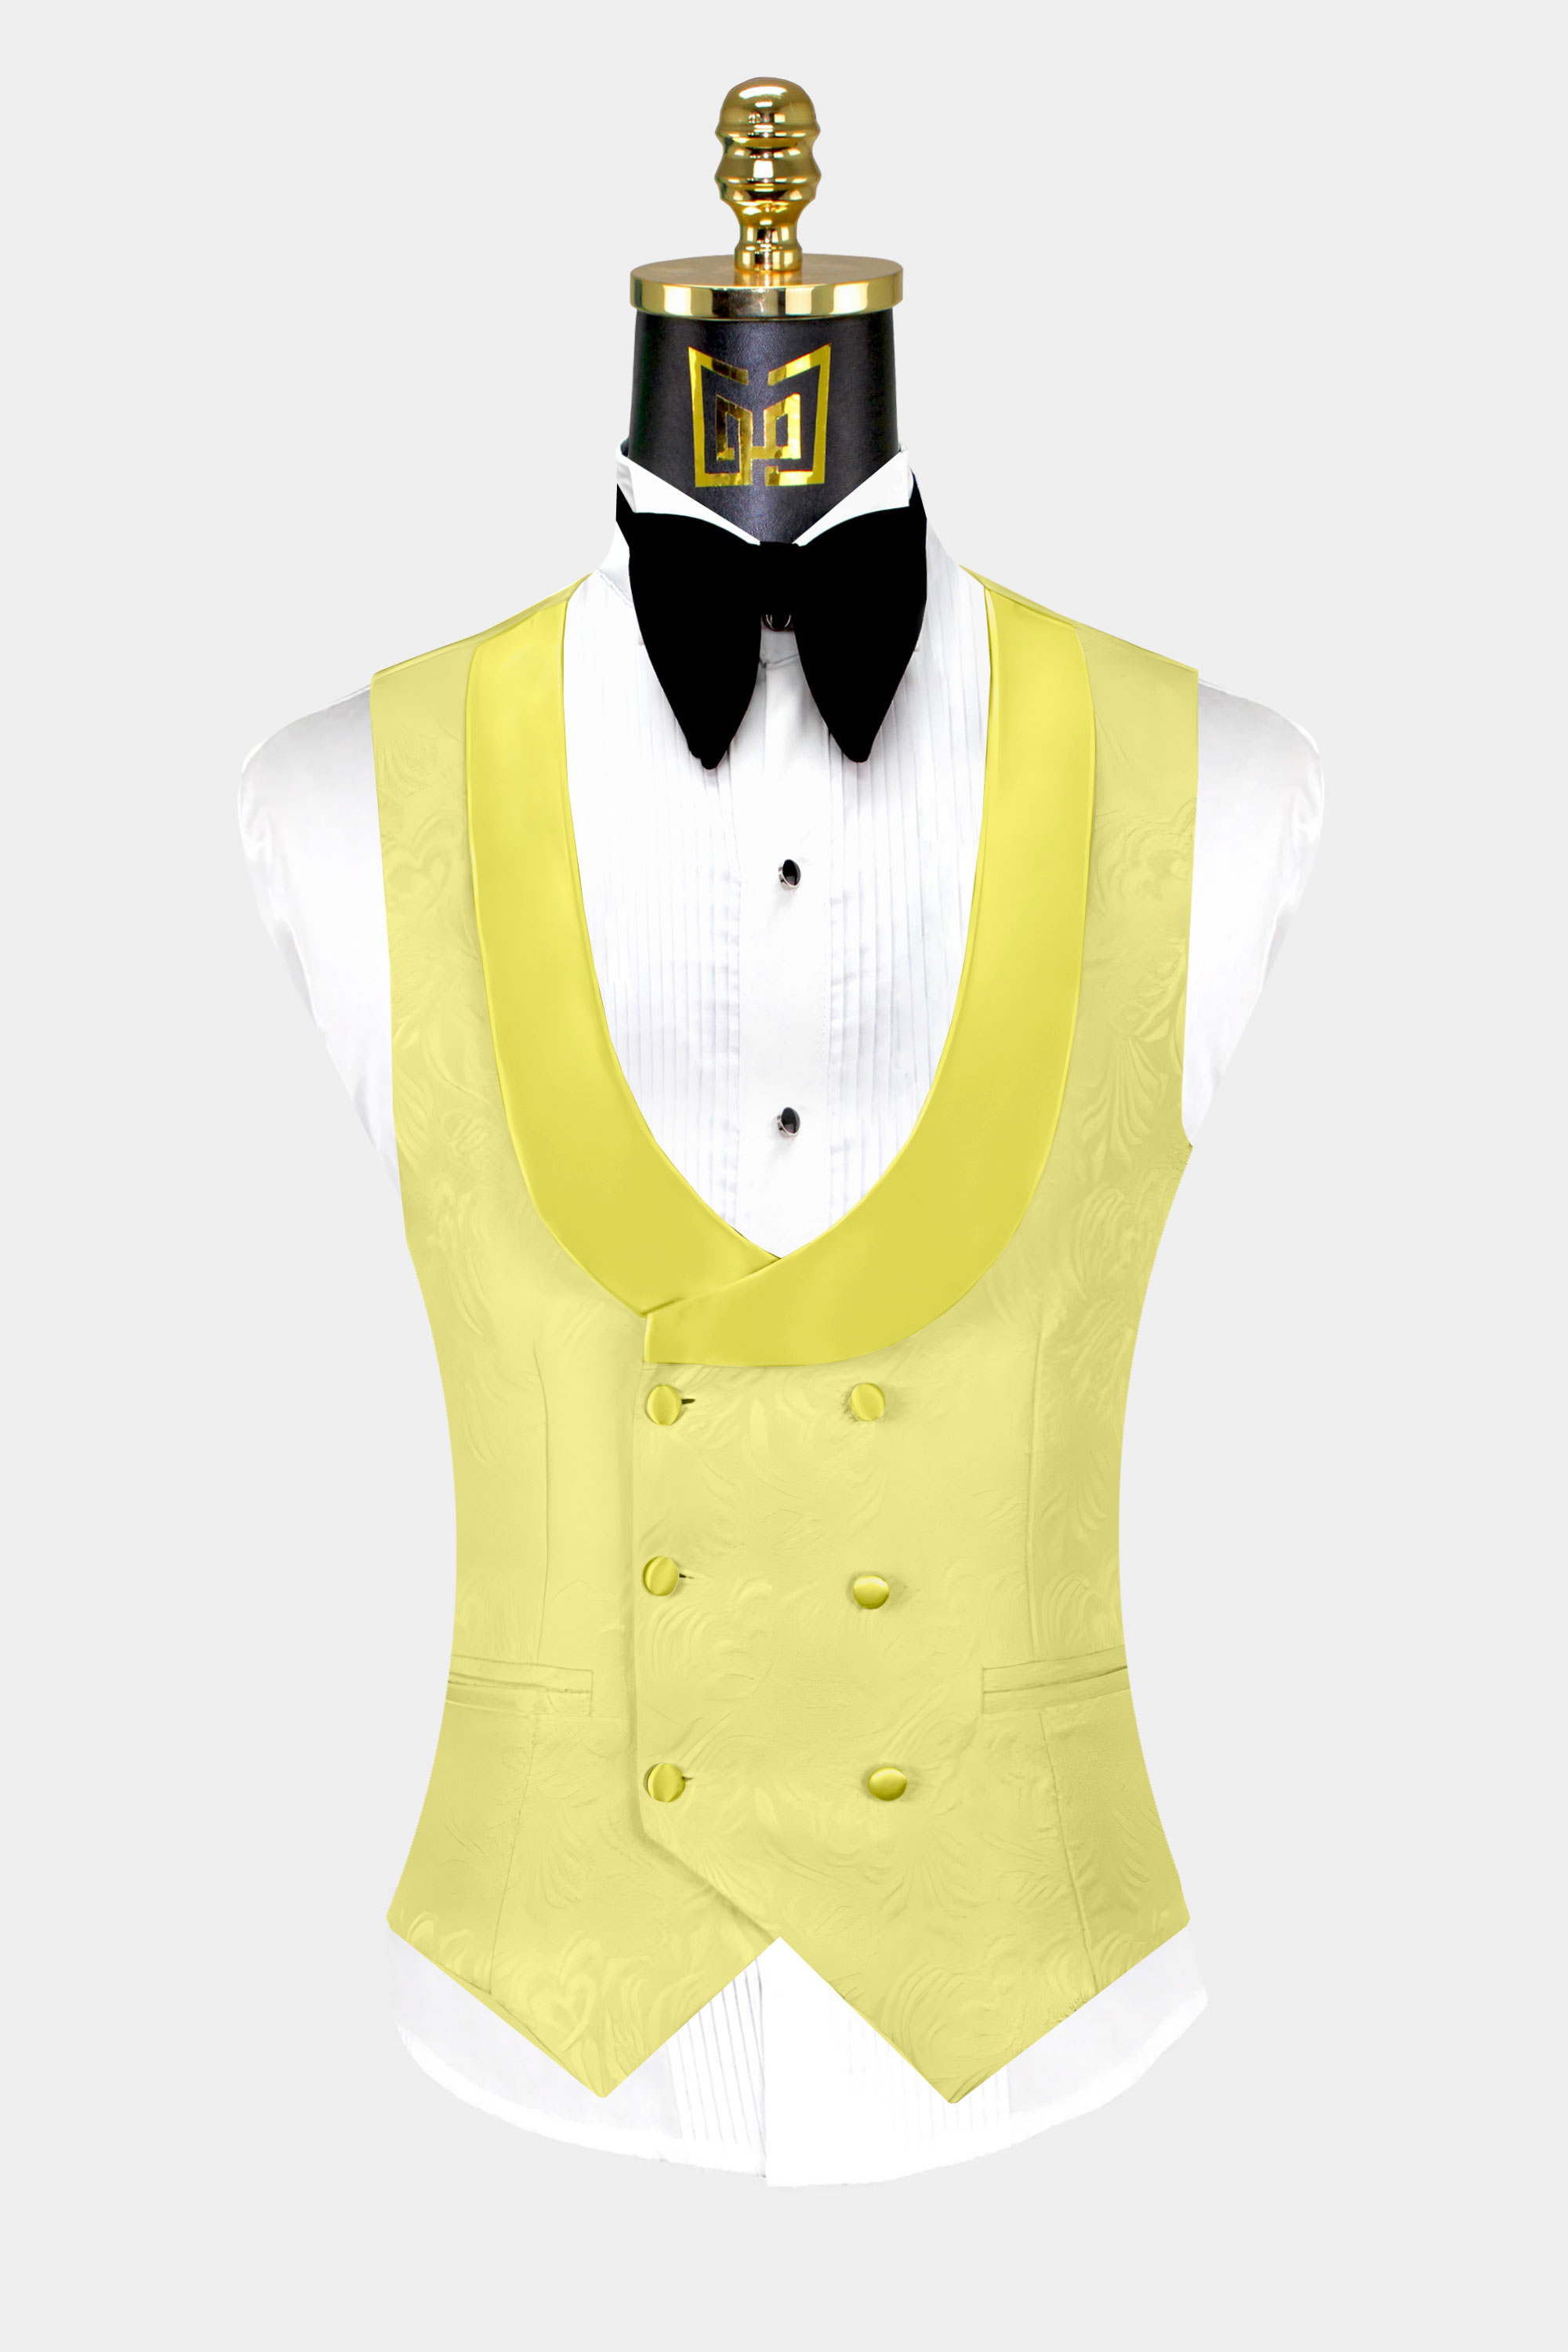 Yellow-Tuxedo-Vest-Wedding-Waistcoat-from-Gentlemansguru.com